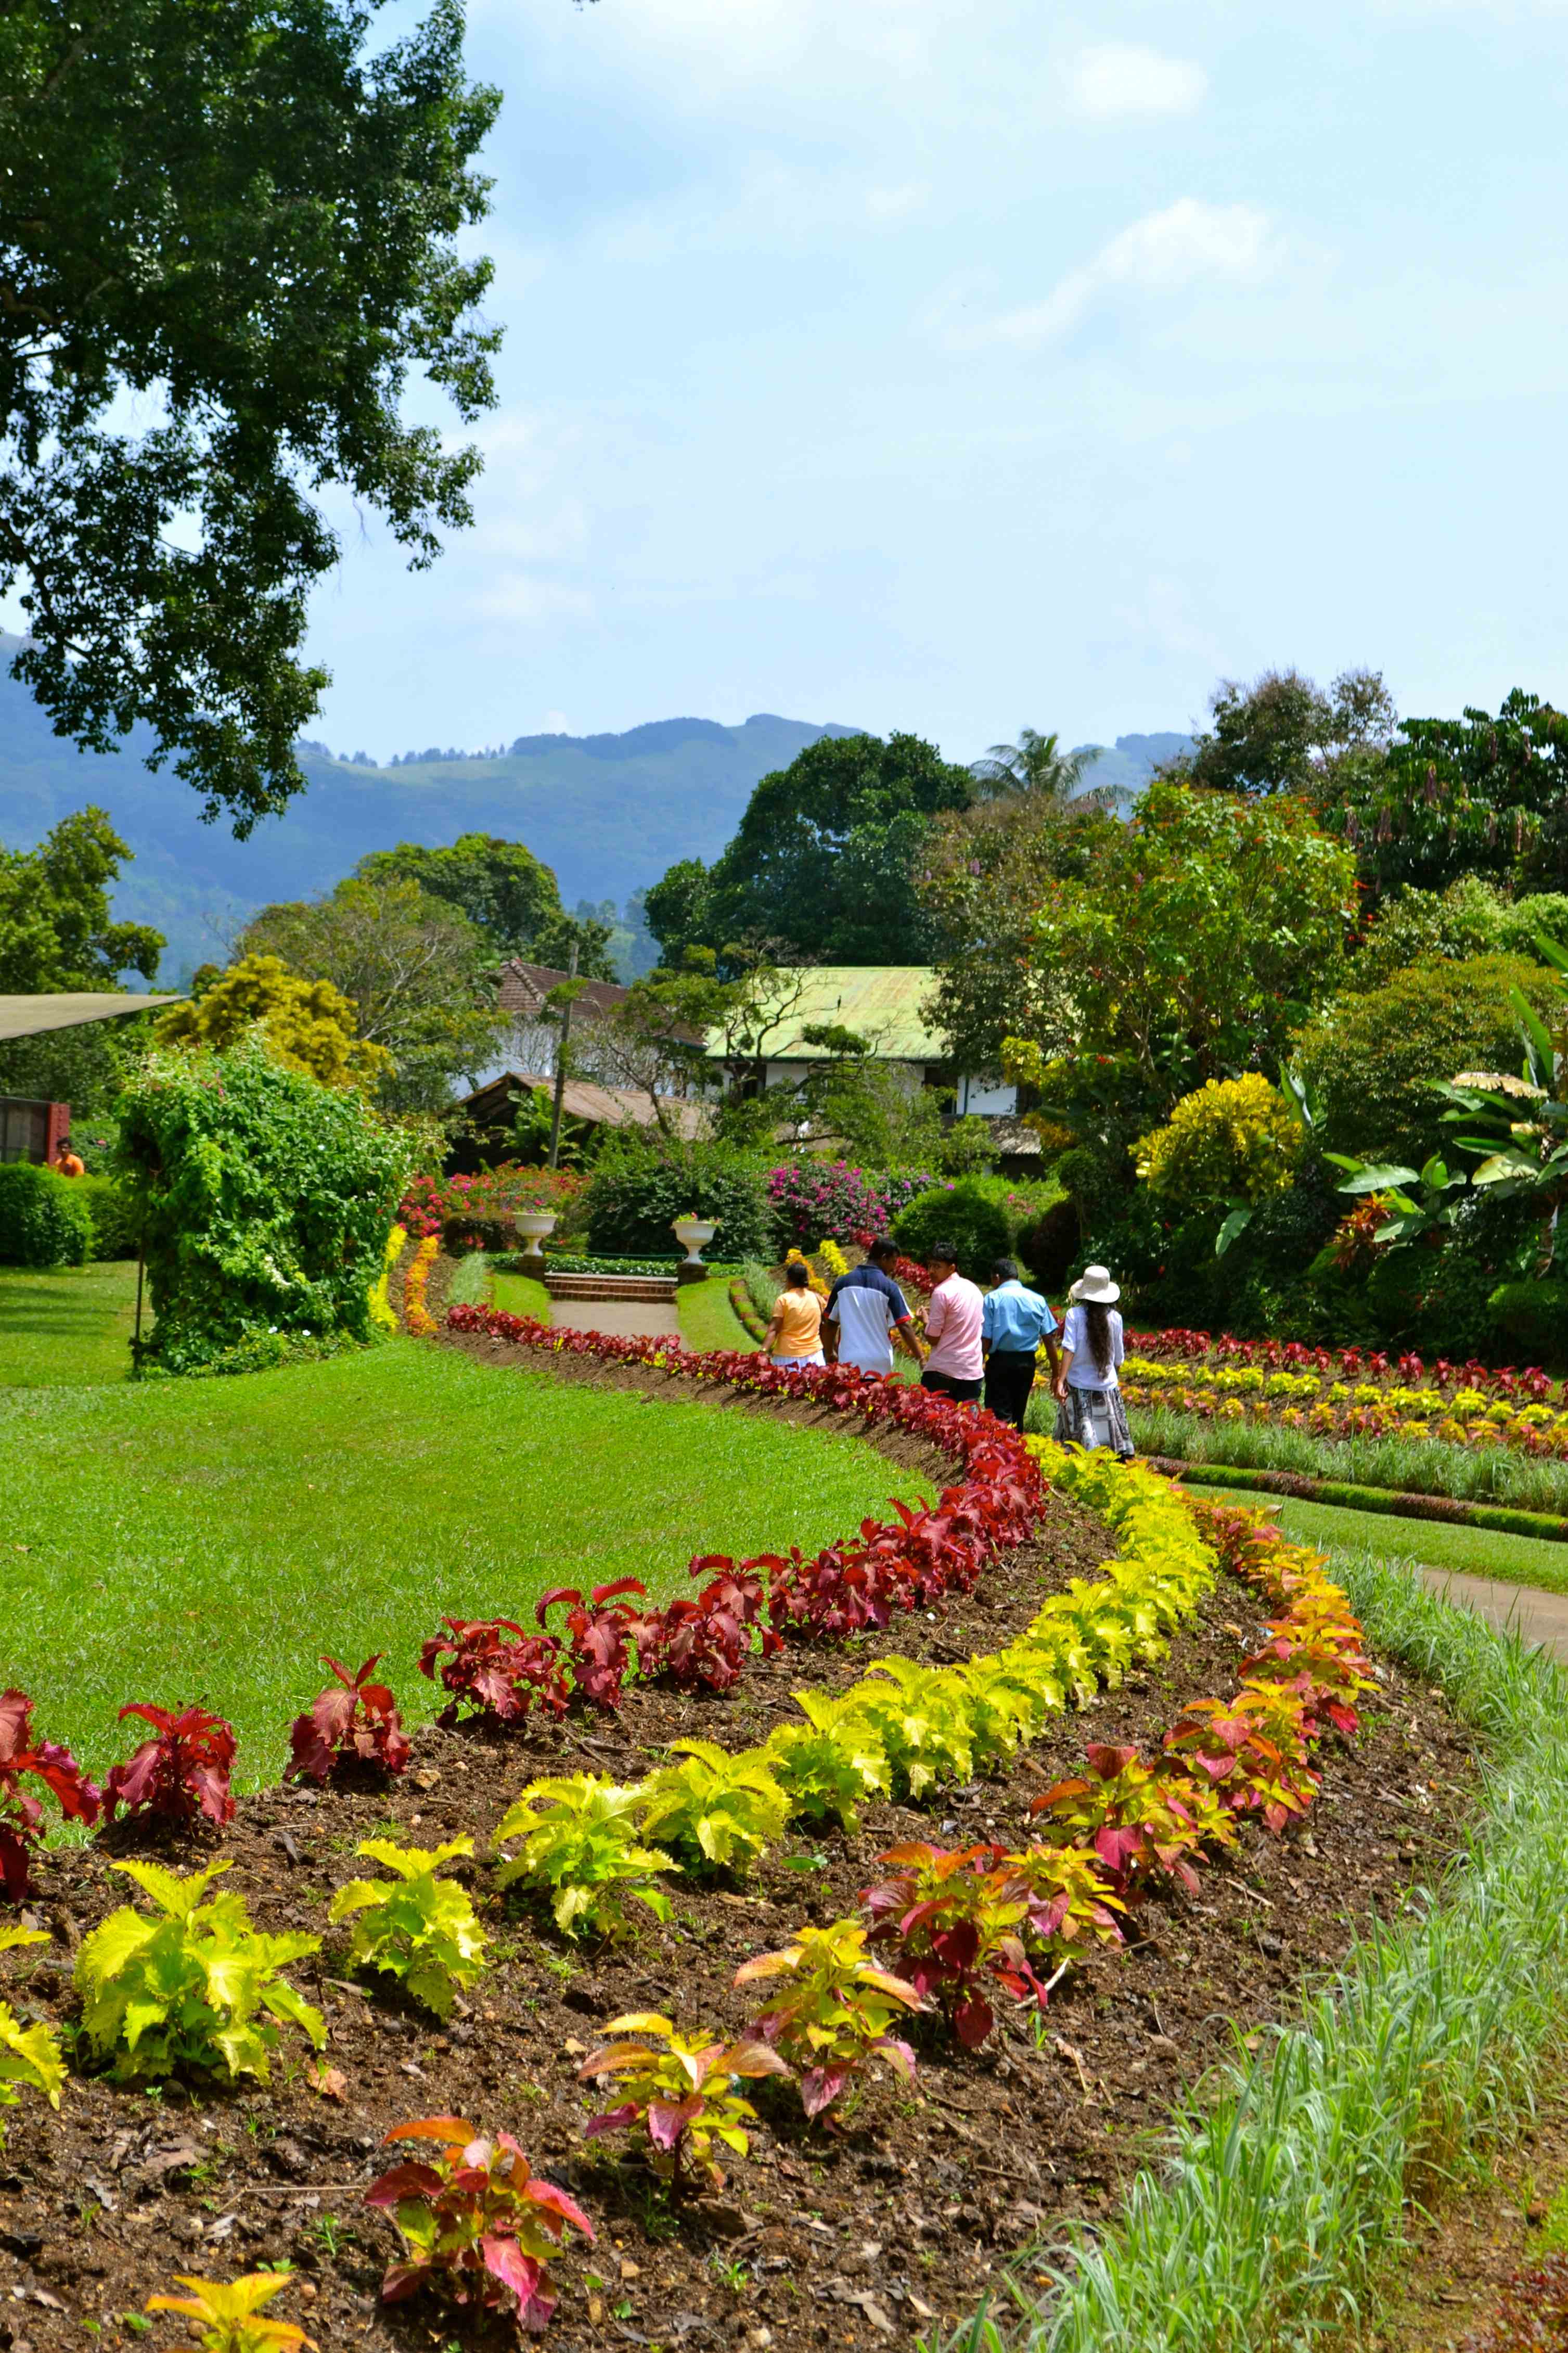 Sri Lanka: Peradeniya Botanical Gardens – Just Go.